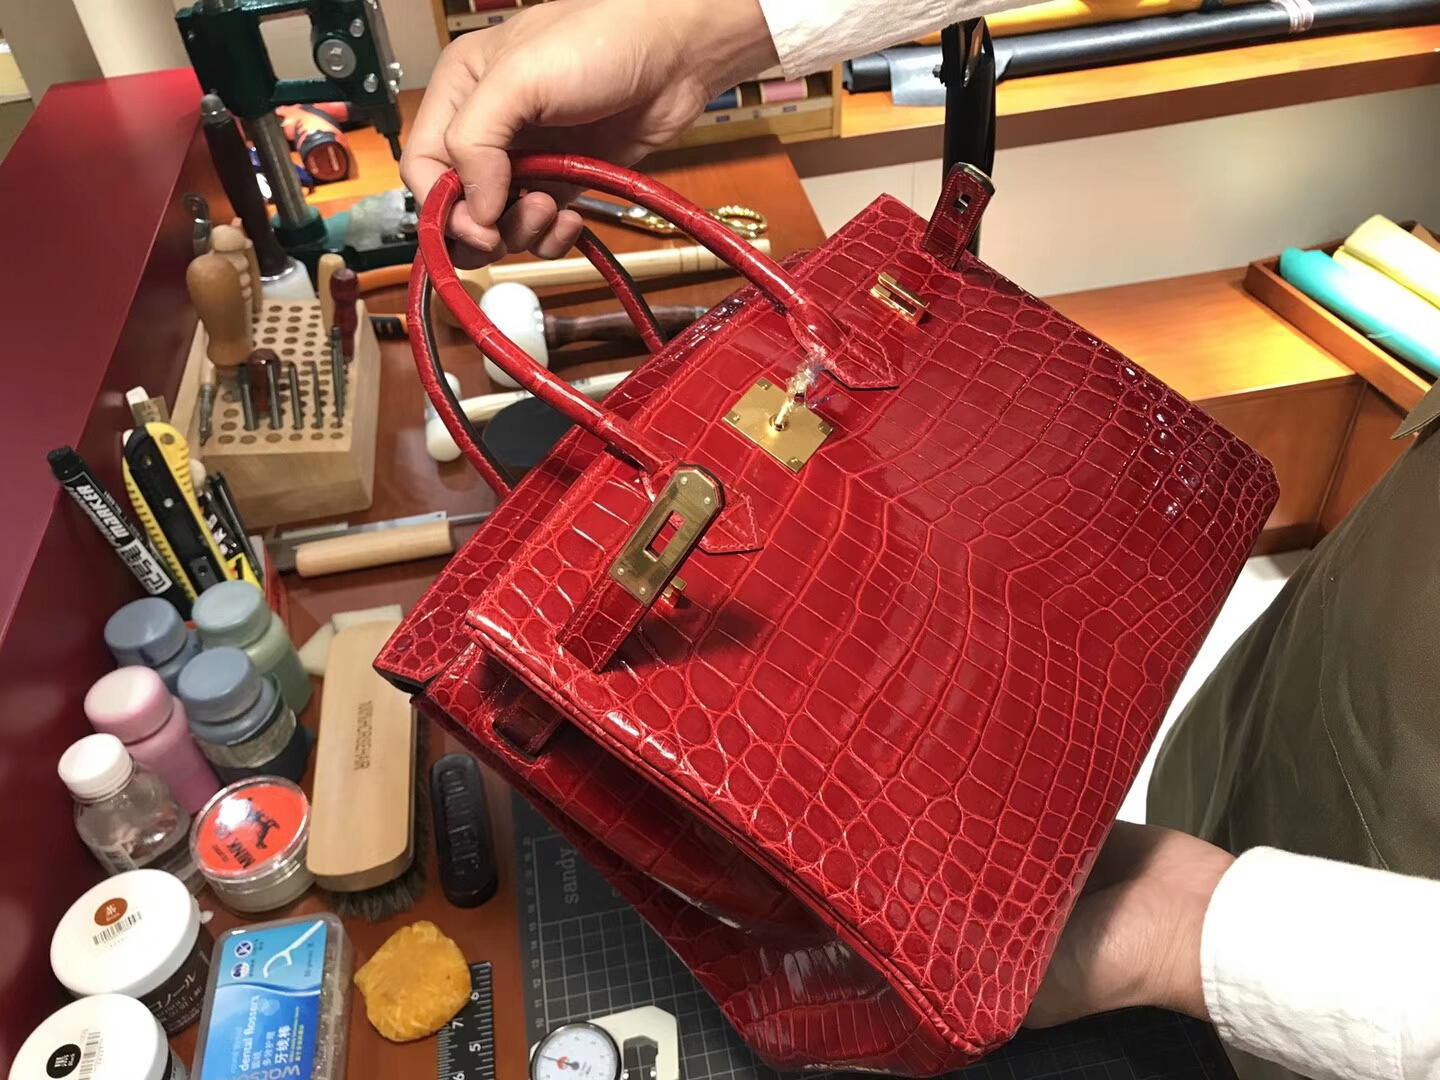 爱马仕 HERMES 铂金包 Birkin 25cm 配全套专柜原版包装 全球发售 鳄鱼 F5 勃艮第酒红色 Bourgogne